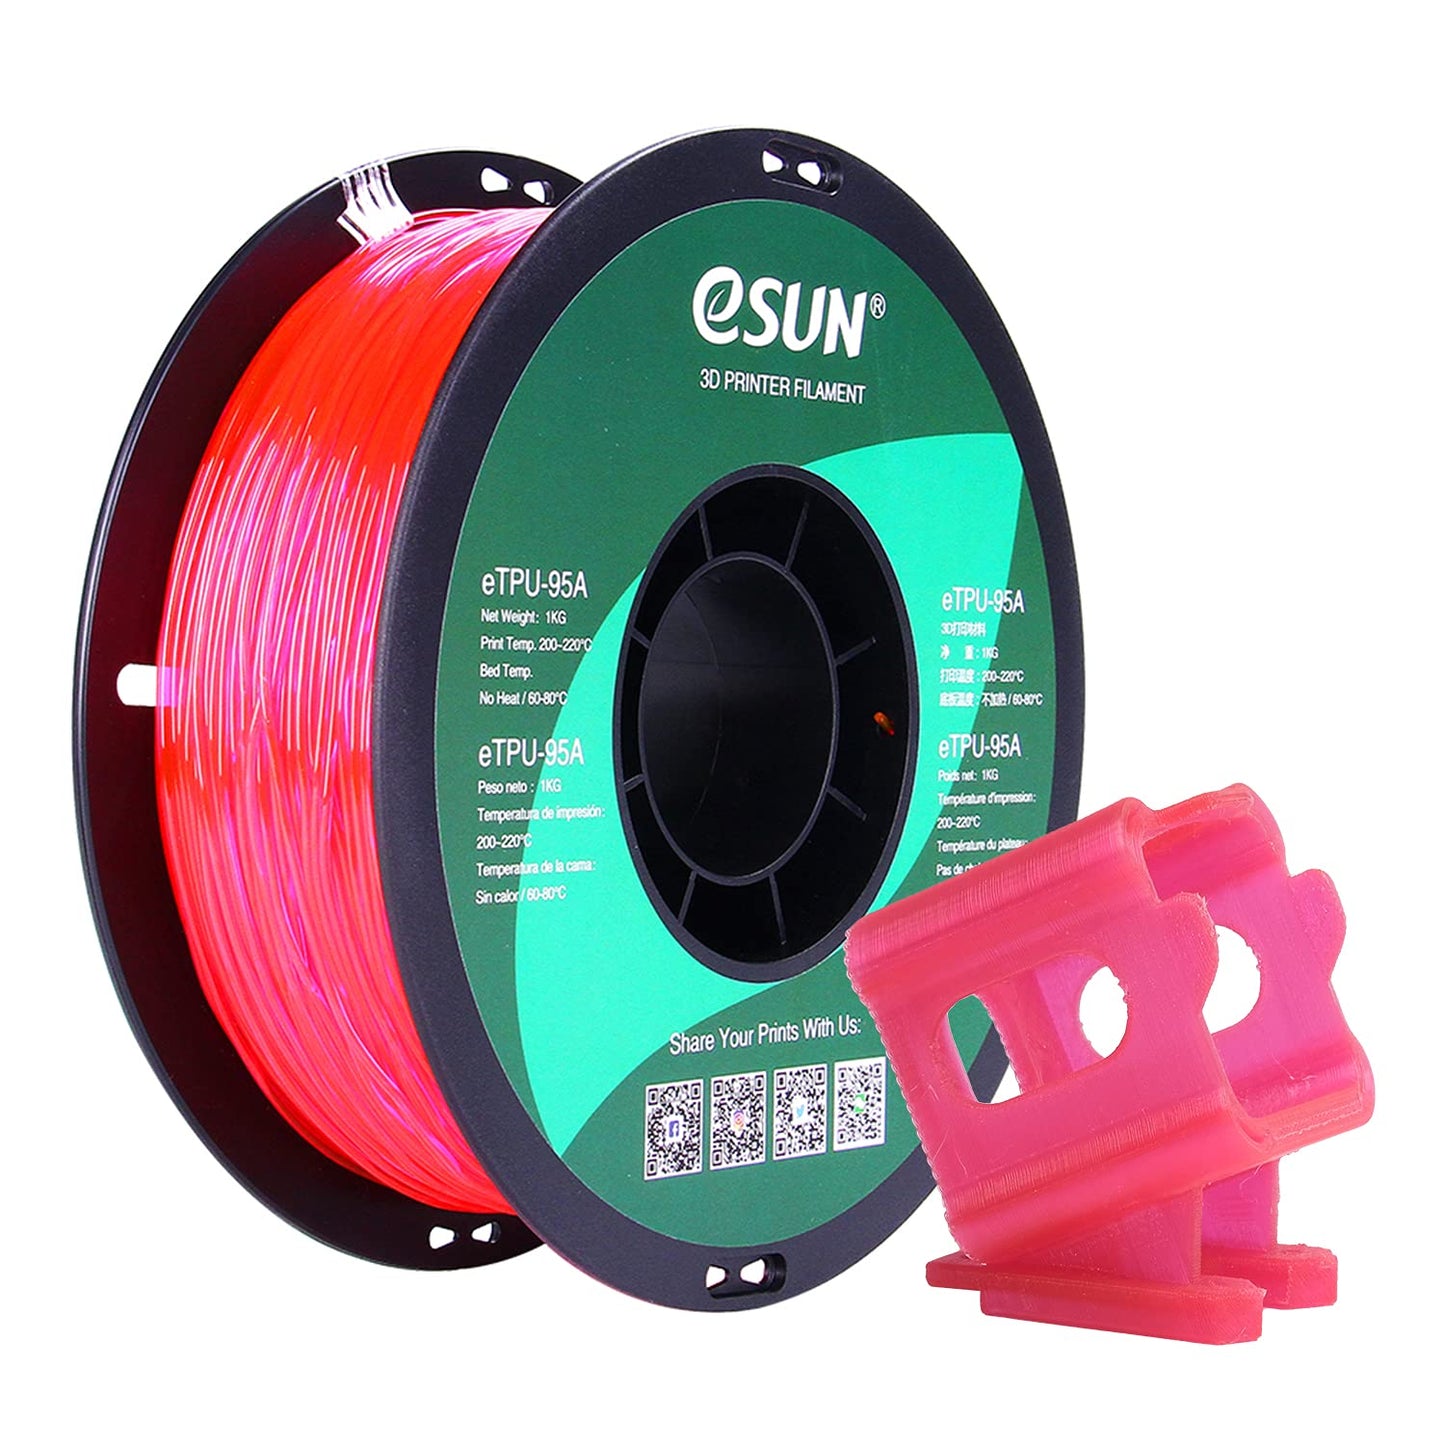 eSUN TPU 95A Flexible Filament 1.75mm 1KG (2.2lb)